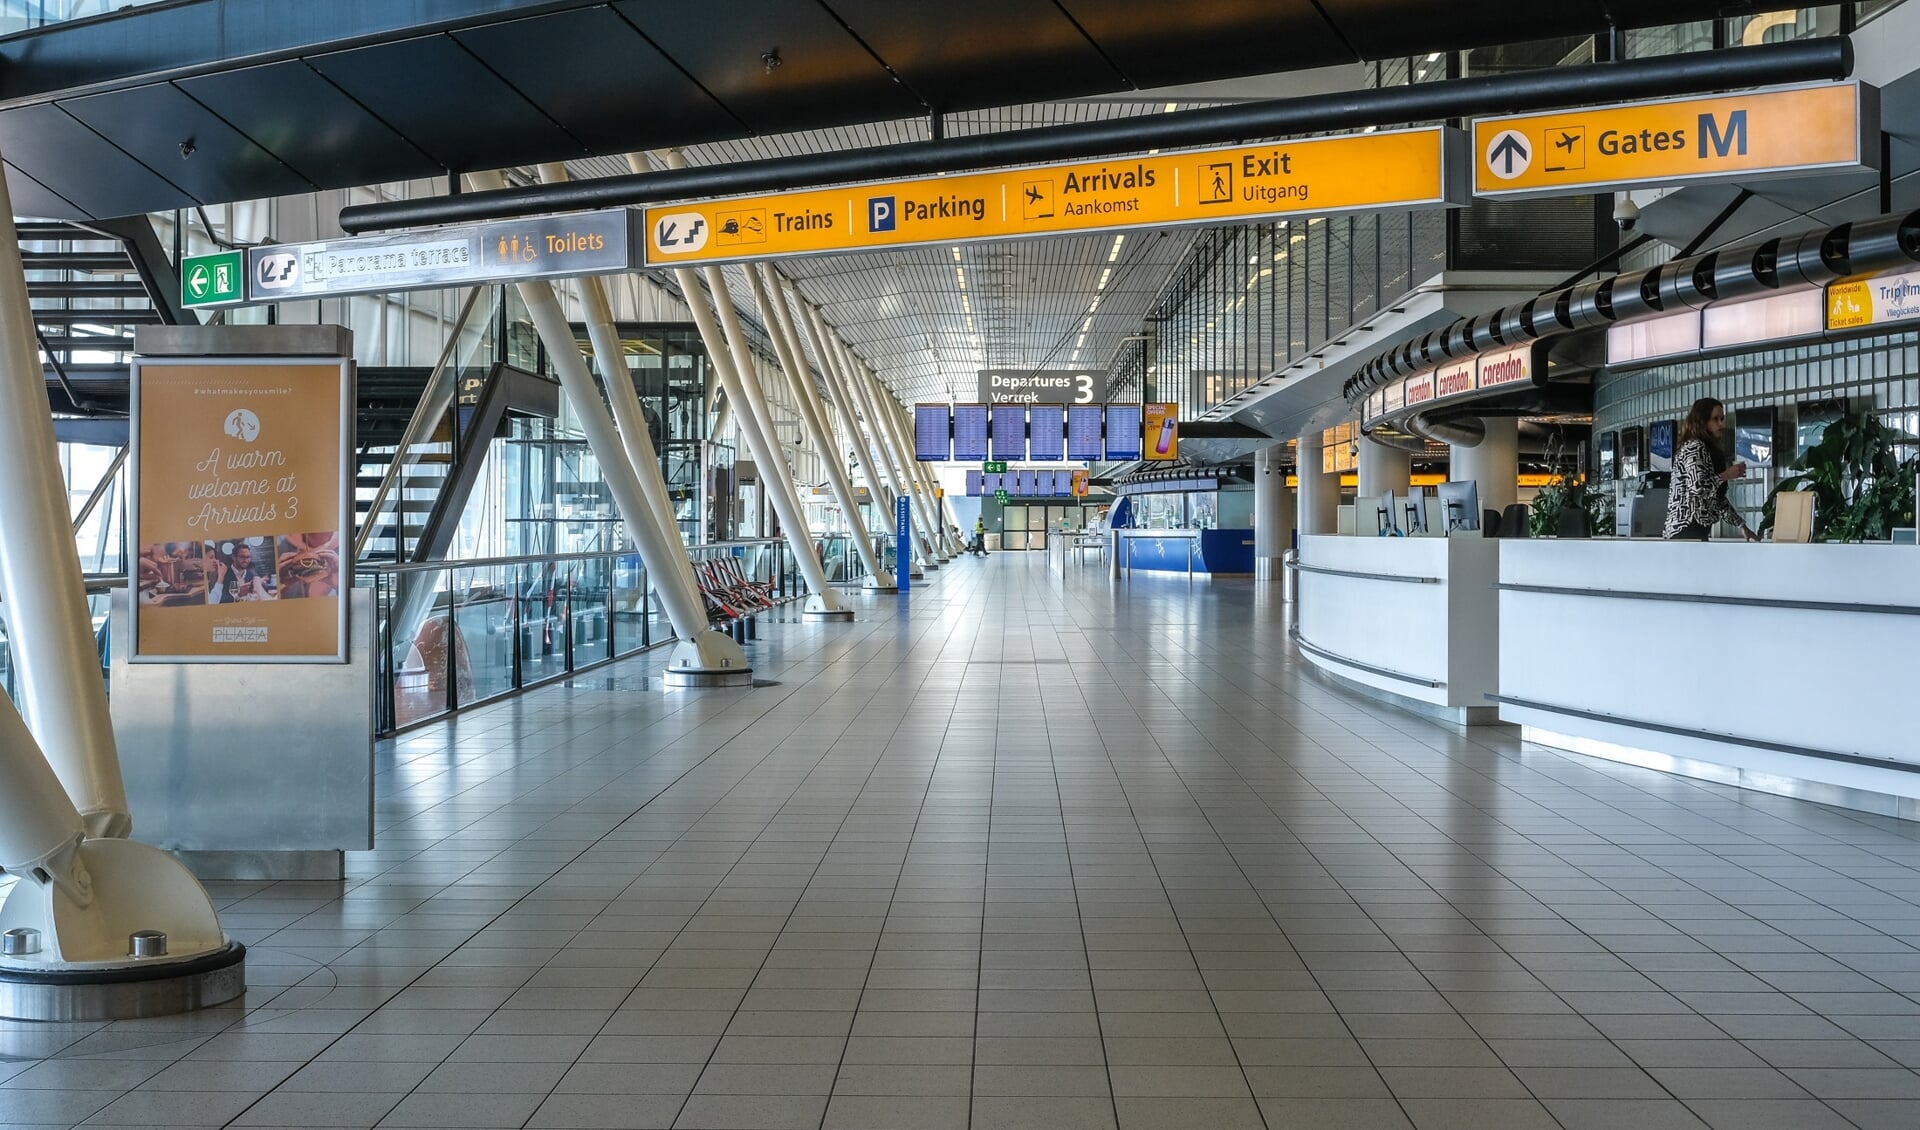 Lege hallen en geannuleerde vluchten, het schrikbeeld van de luchthaven Schiphol de afgelopen maanden. 